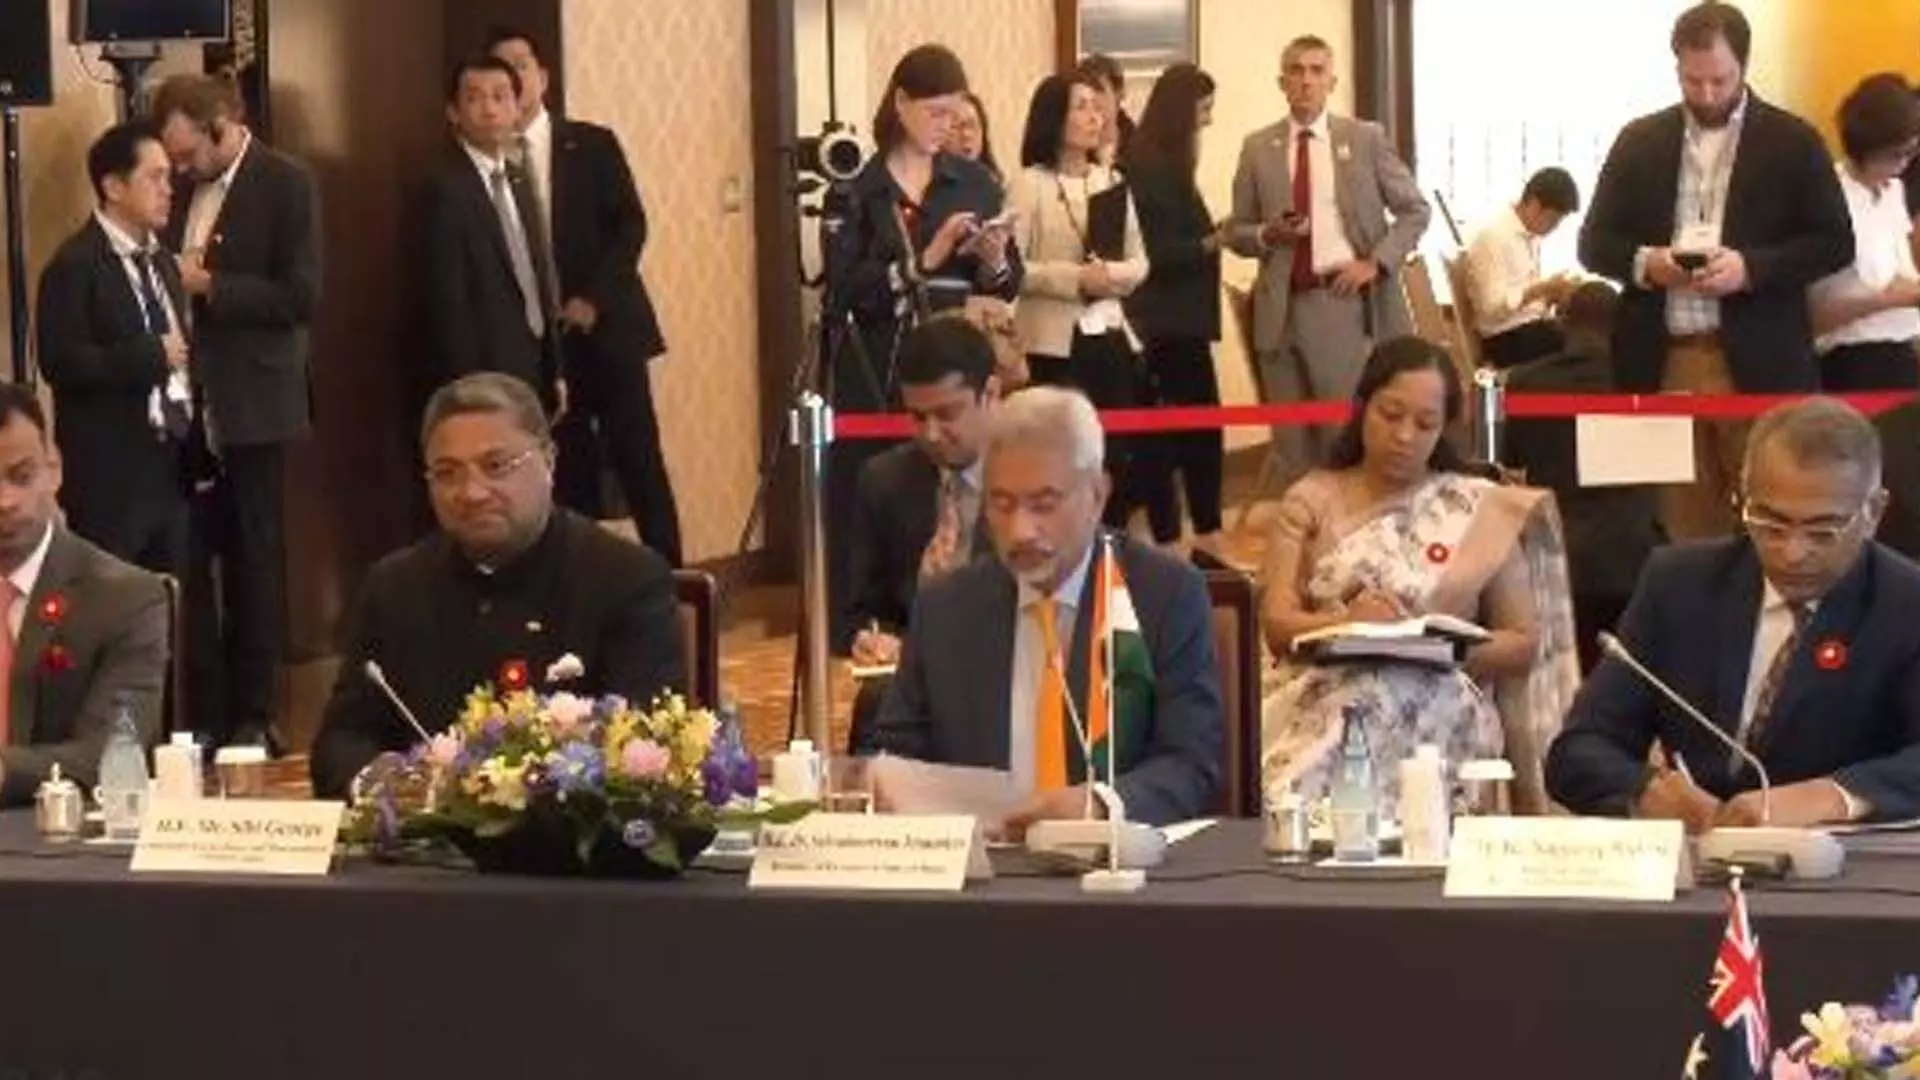 Foreign मंत्री जयशंकर ने क्वाड बैठक की शुरुआत की